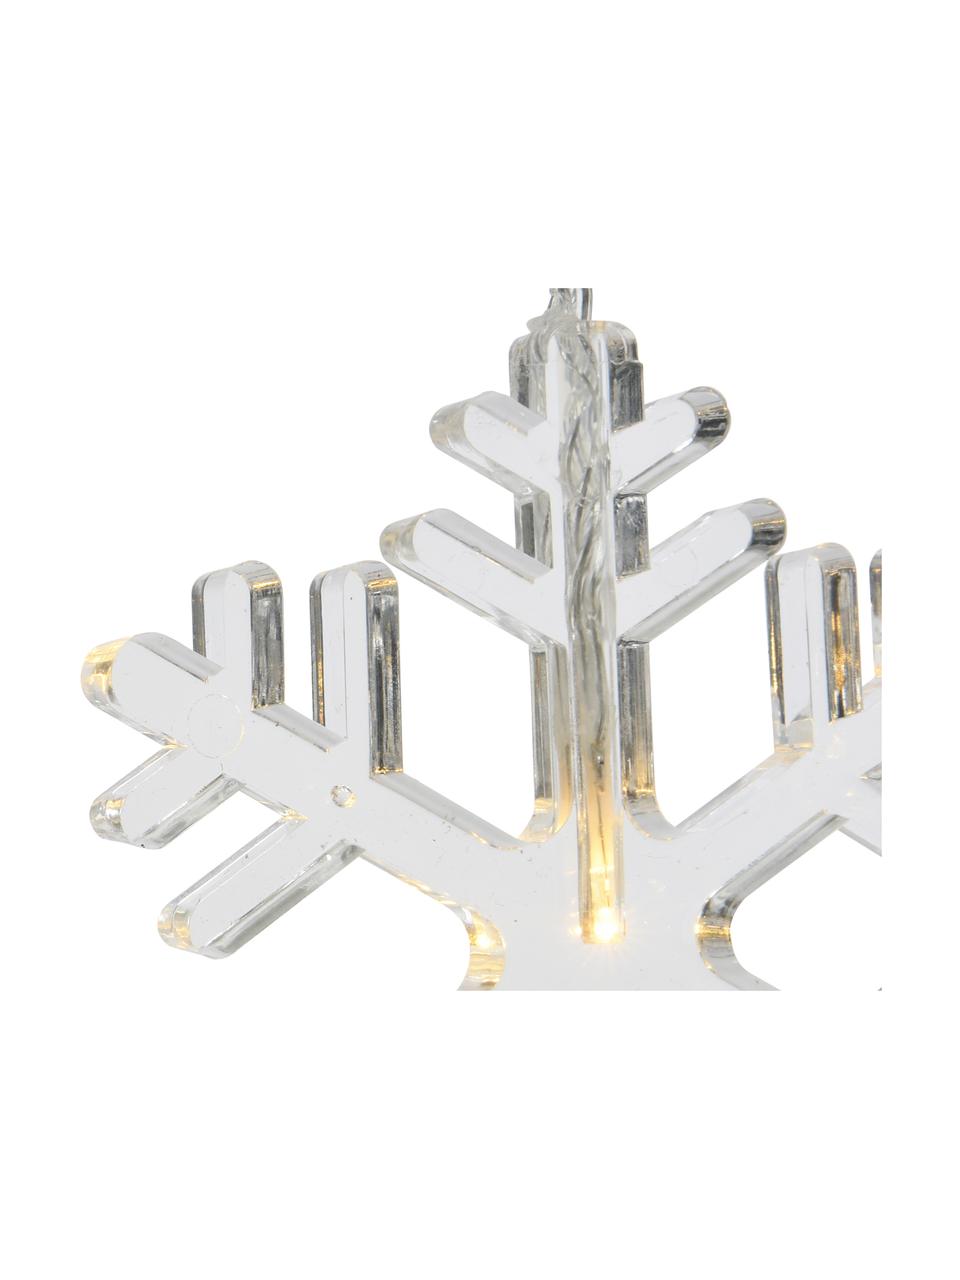 Girlanda świetlna LED Frost, dł. 105 cm, Tworzywo sztuczne, Transparentny, D 105 cm